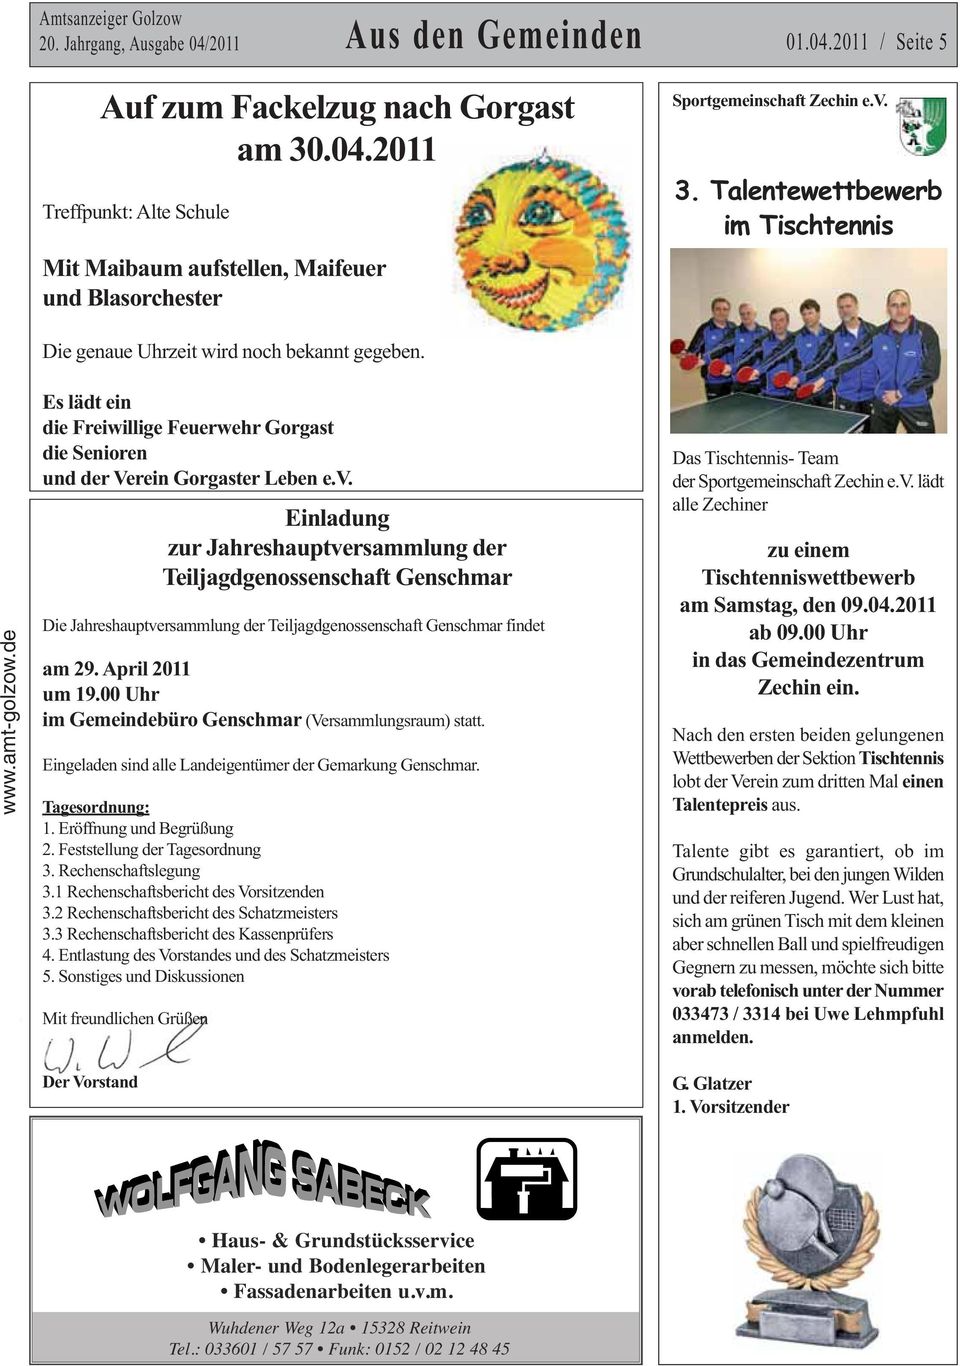 Einladung zur Jahreshauptversammlung der Teiljagdgenossenschaft Genschmar Die Jahreshauptversammlung der Teiljagdgenossenschaft Genschmar findet am 29. April 2011 um 19.